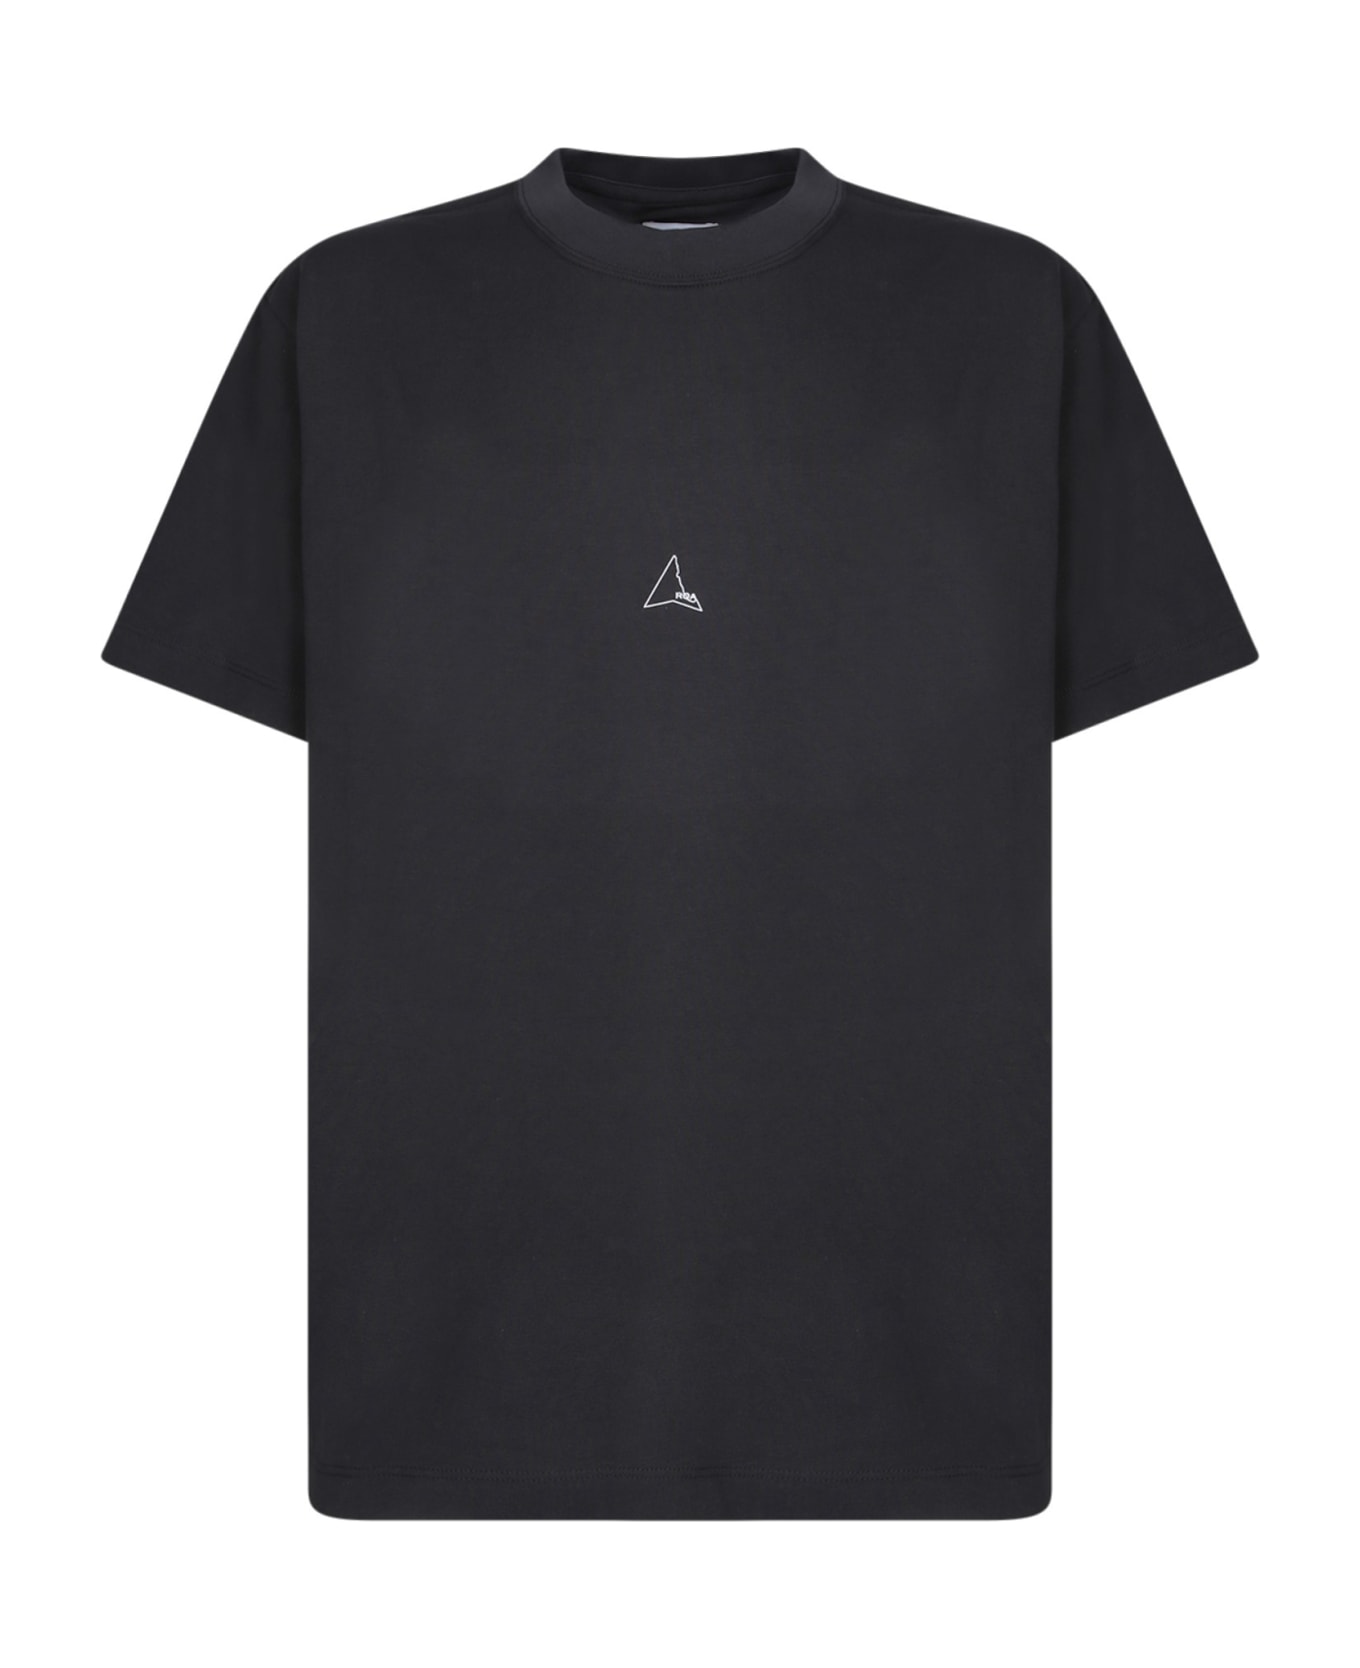 ROA Logo Black T-shirt - Black